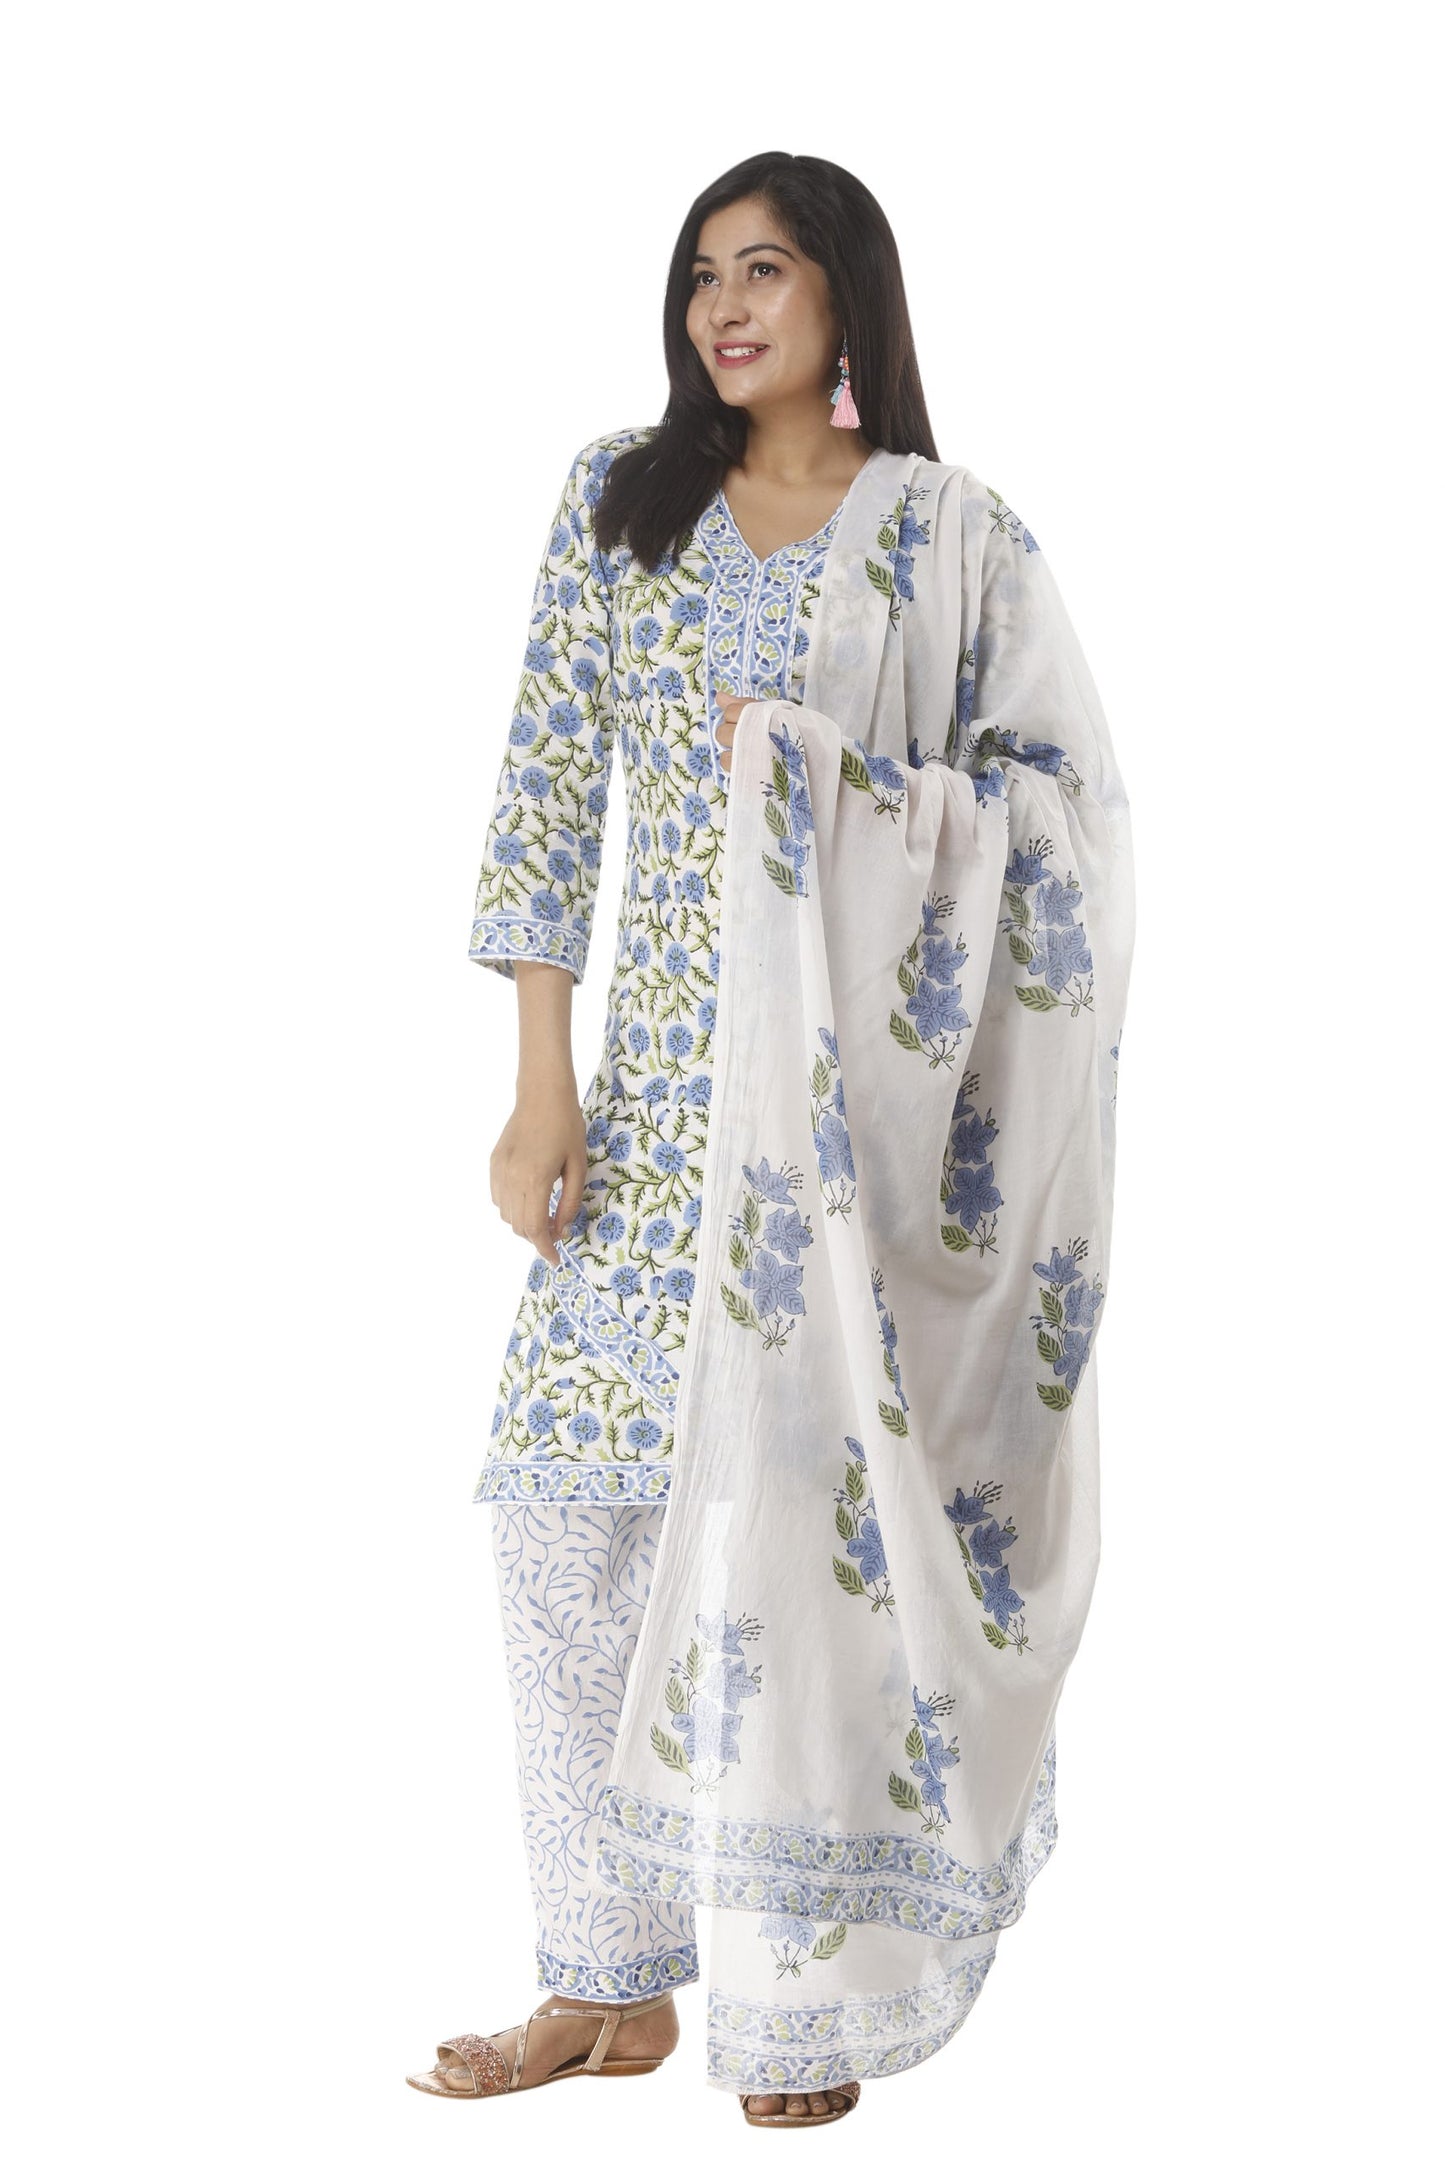 Unstitched Floral Block Print Salwar suit with Cotton Dupatta - JB304